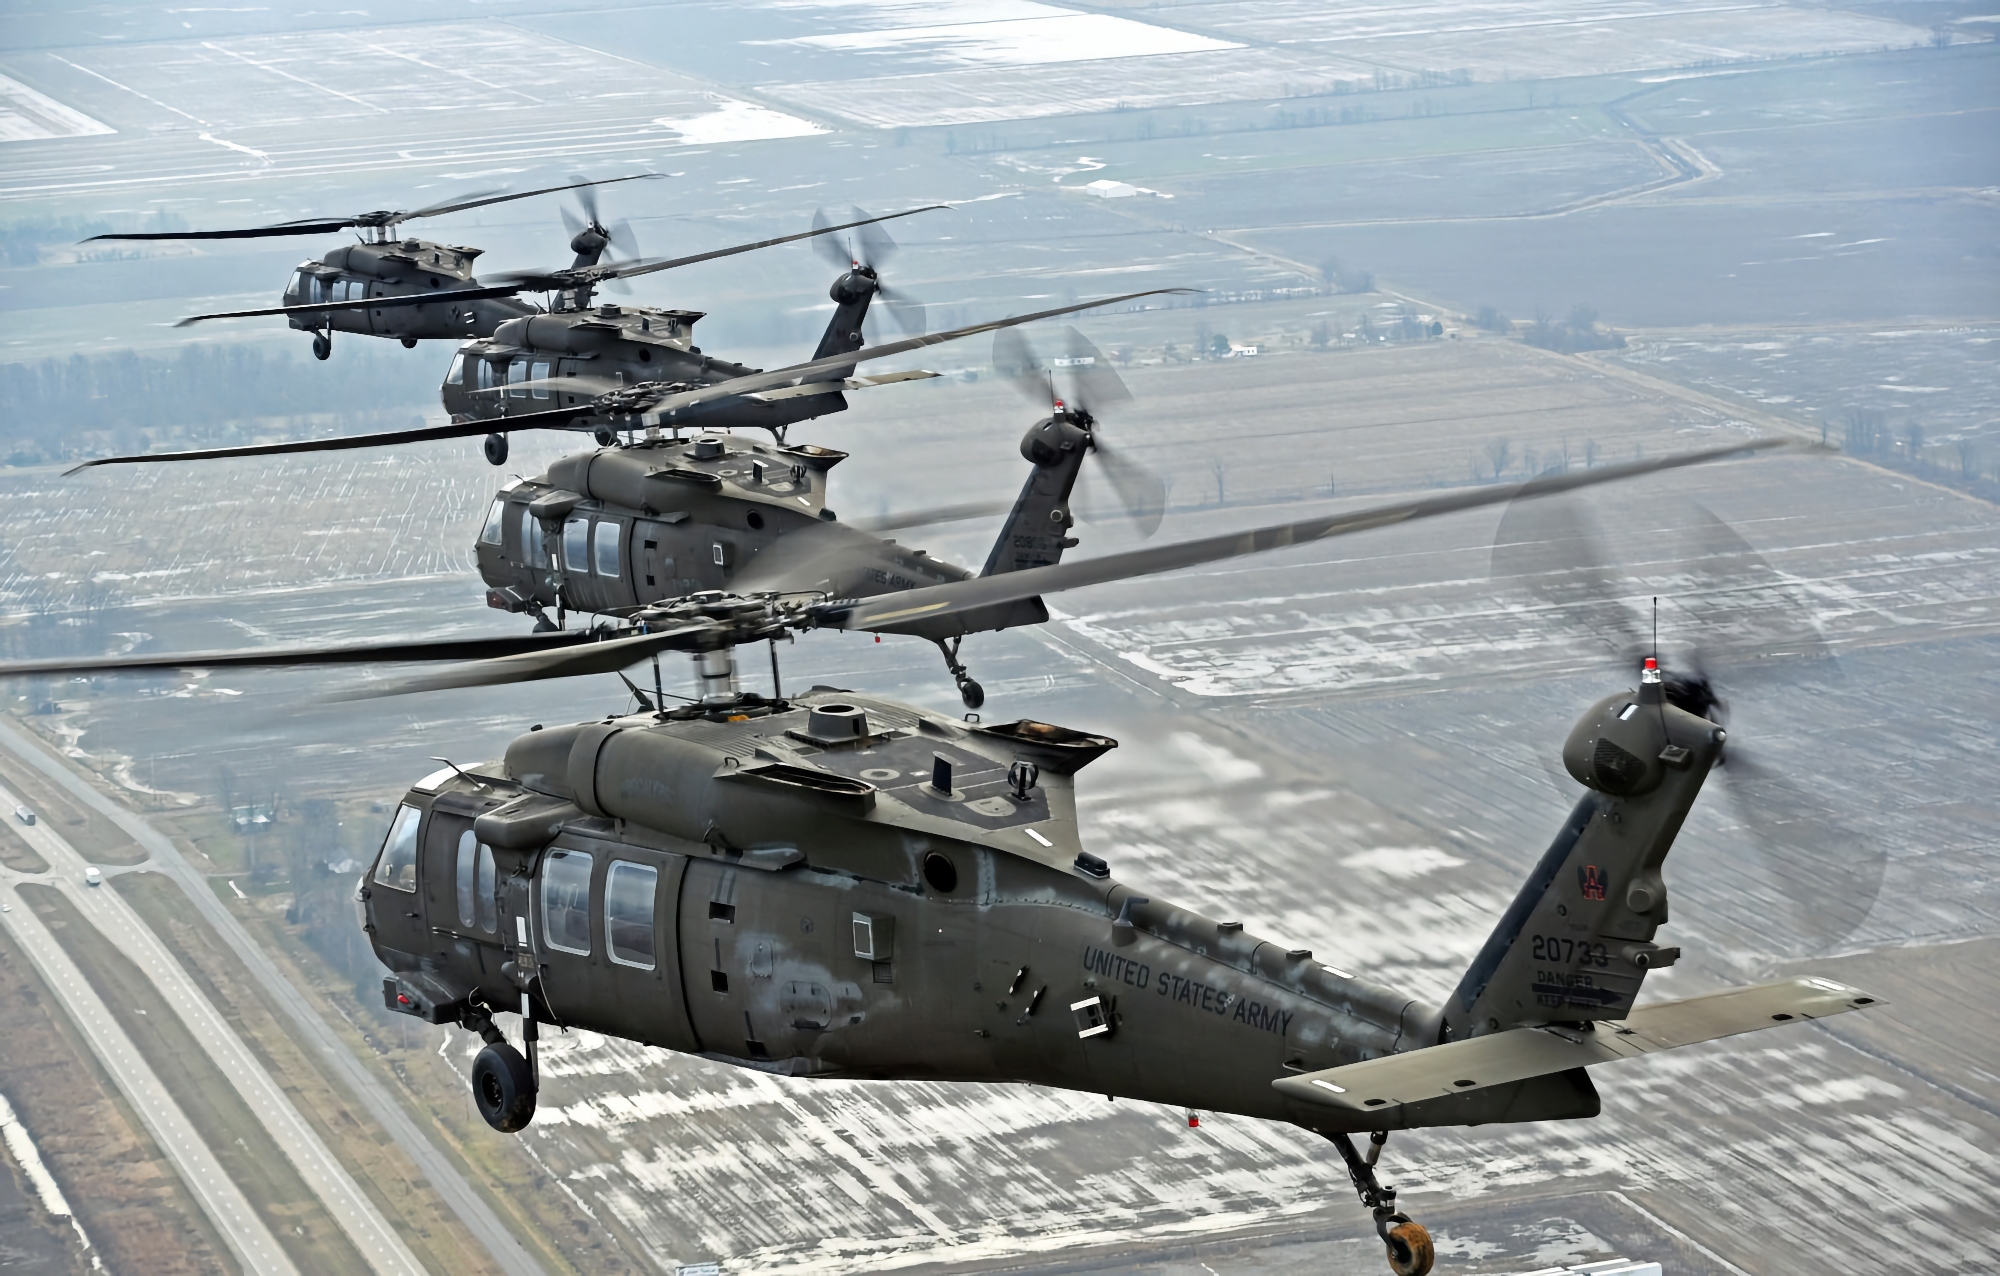 UH-60L e Airbus AS532 UE Cougar (HM-3) in sostituzione: L'Aviazione dell'Esercito brasiliano riceverà elicotteri UH-60 Black Hawk statunitensi